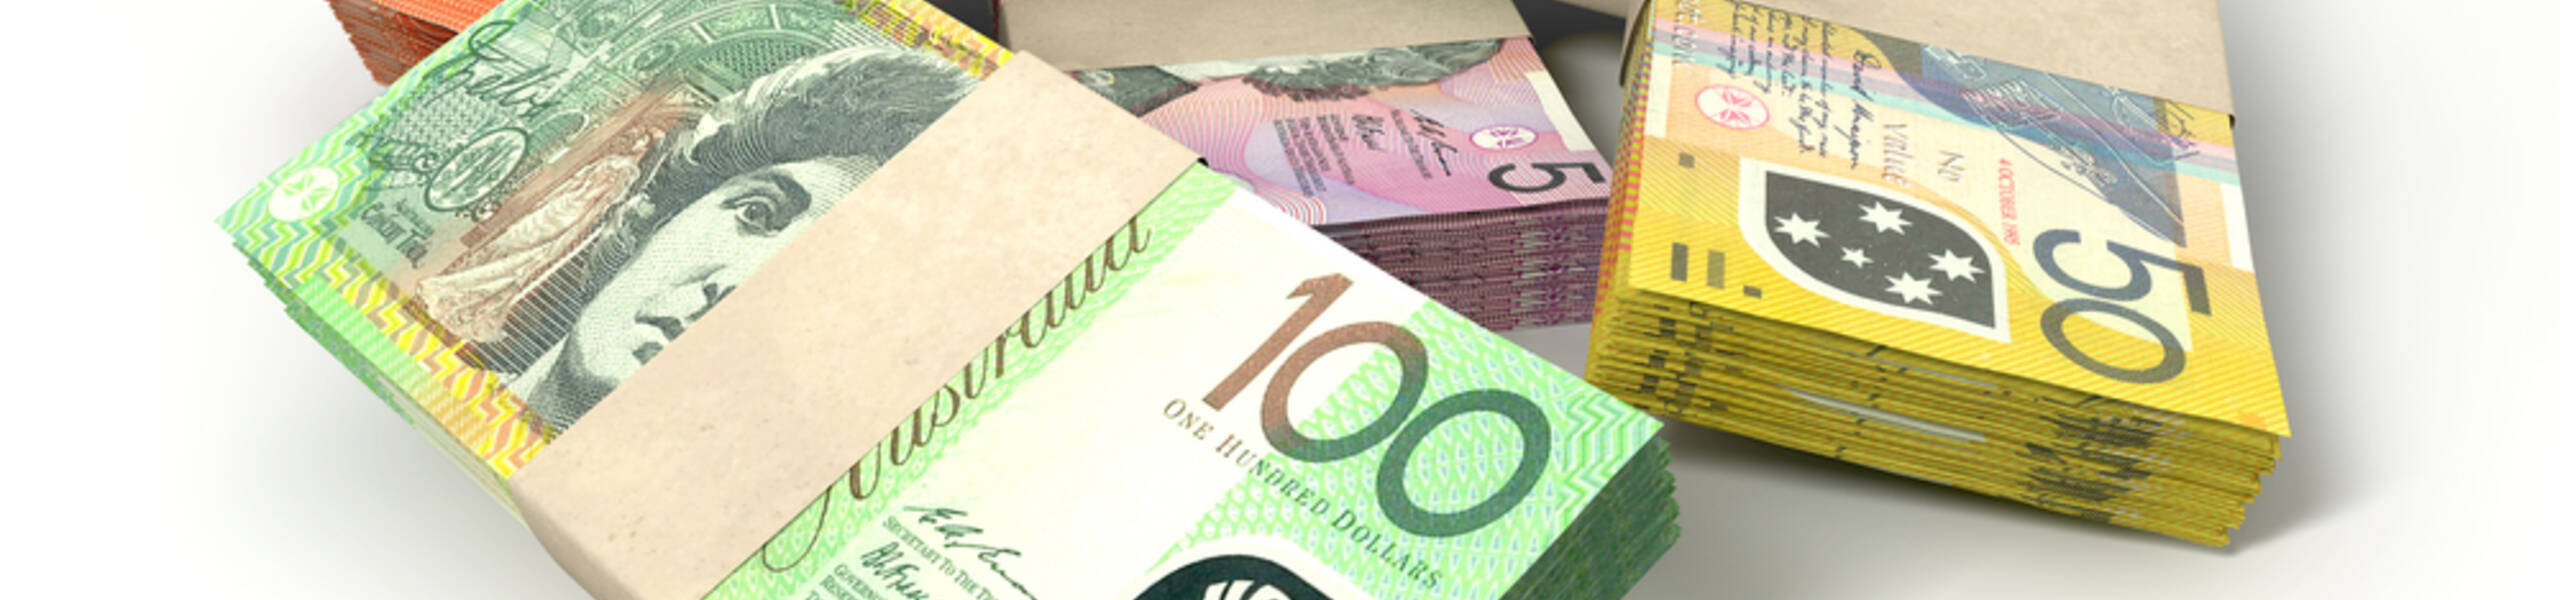 ยอดขายปลีกออสเตรเลียกับค่าเงินออสเตรเลีย